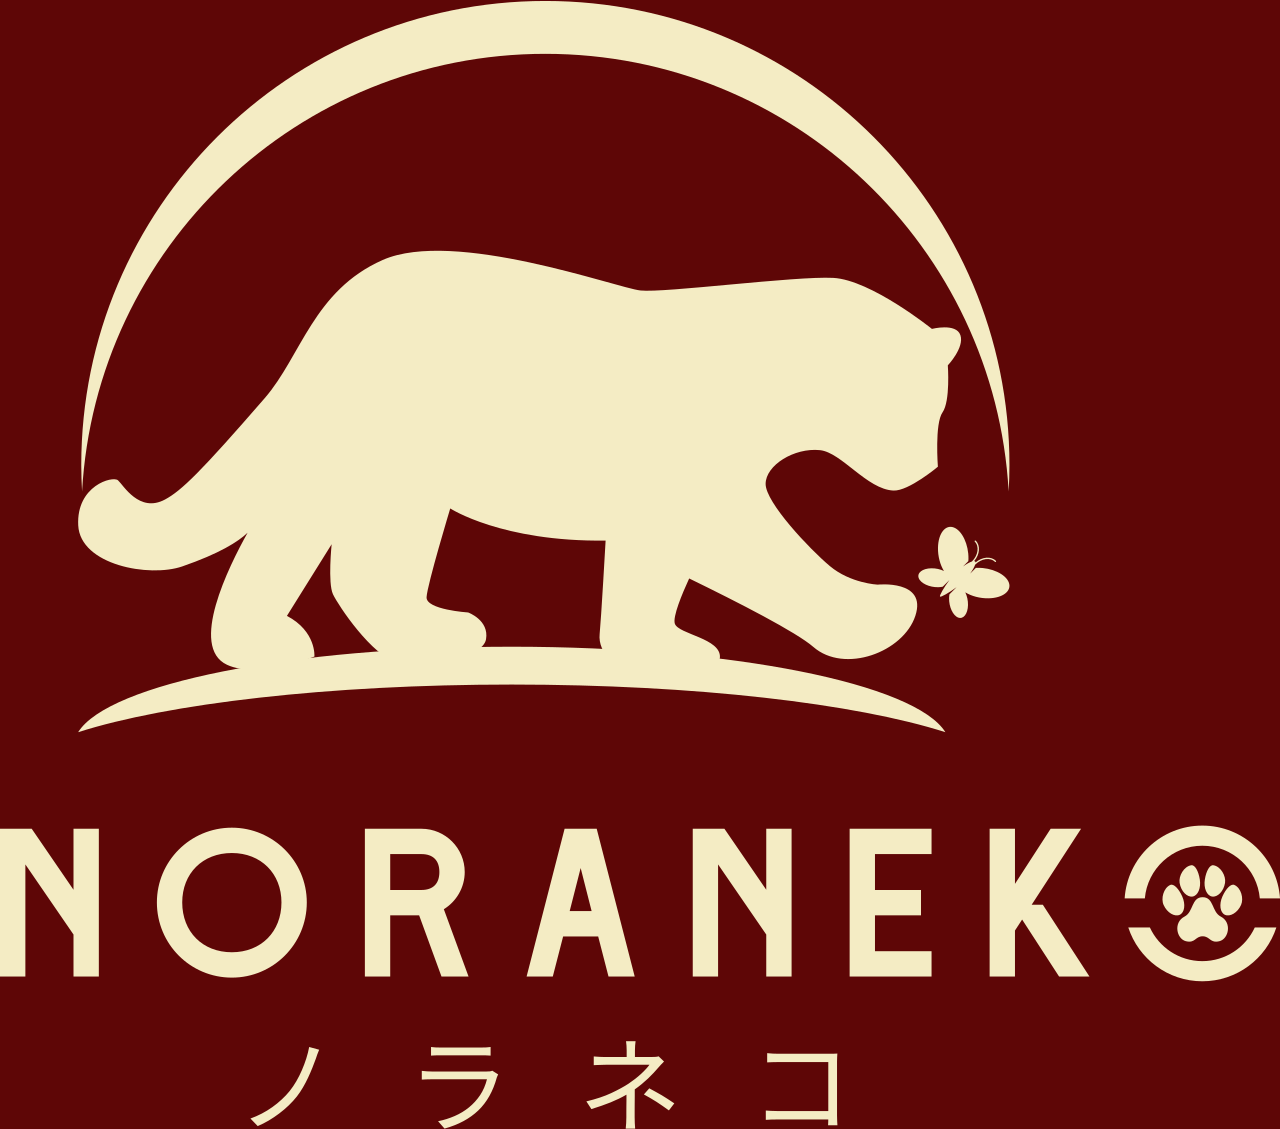 NoraNeko's logo